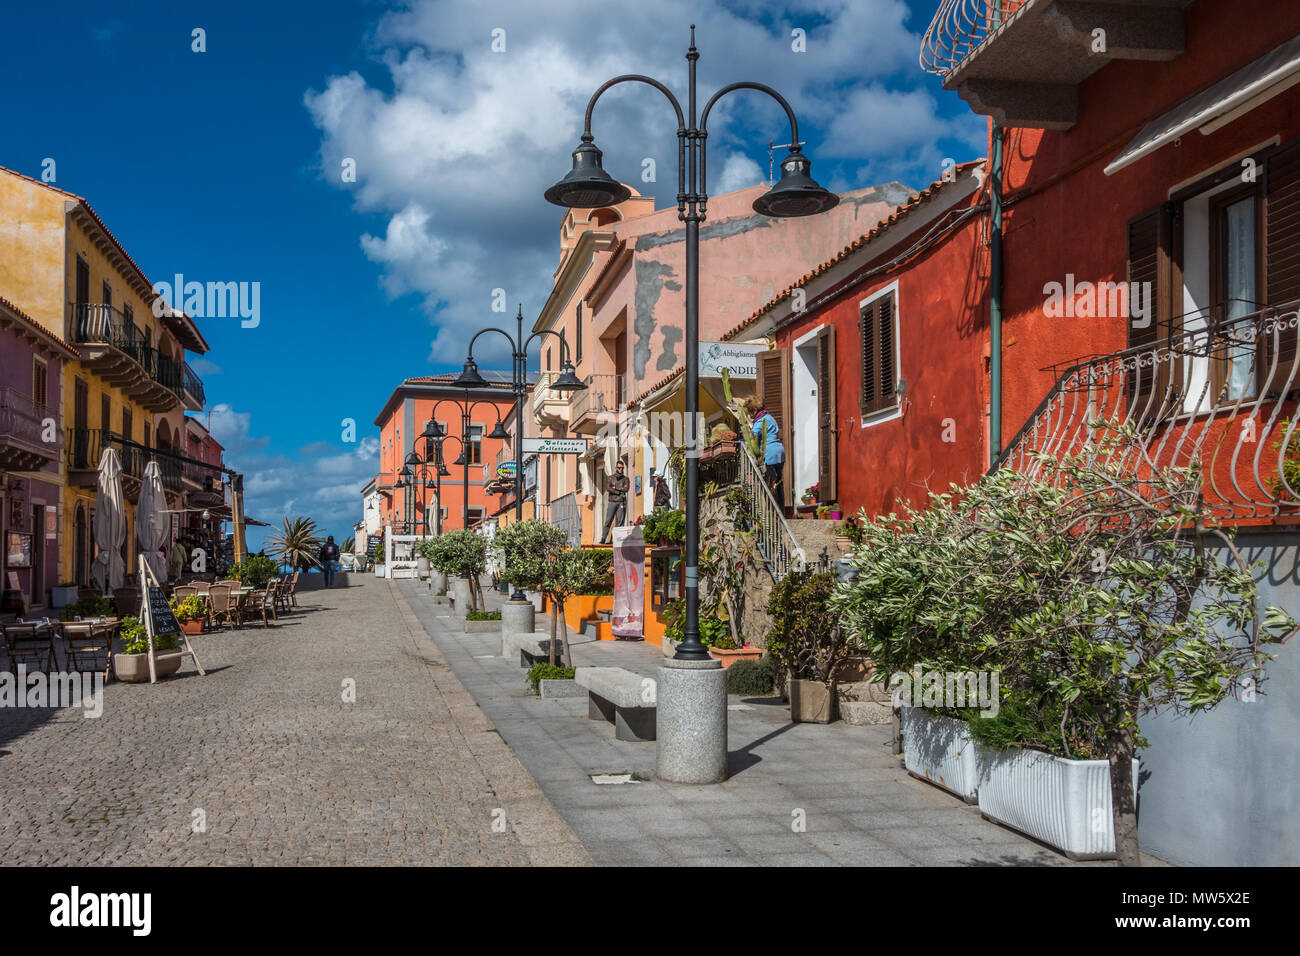 Una bella strada con case colorate in Santa Teresa Gallura Sardegna, Italia Foto Stock